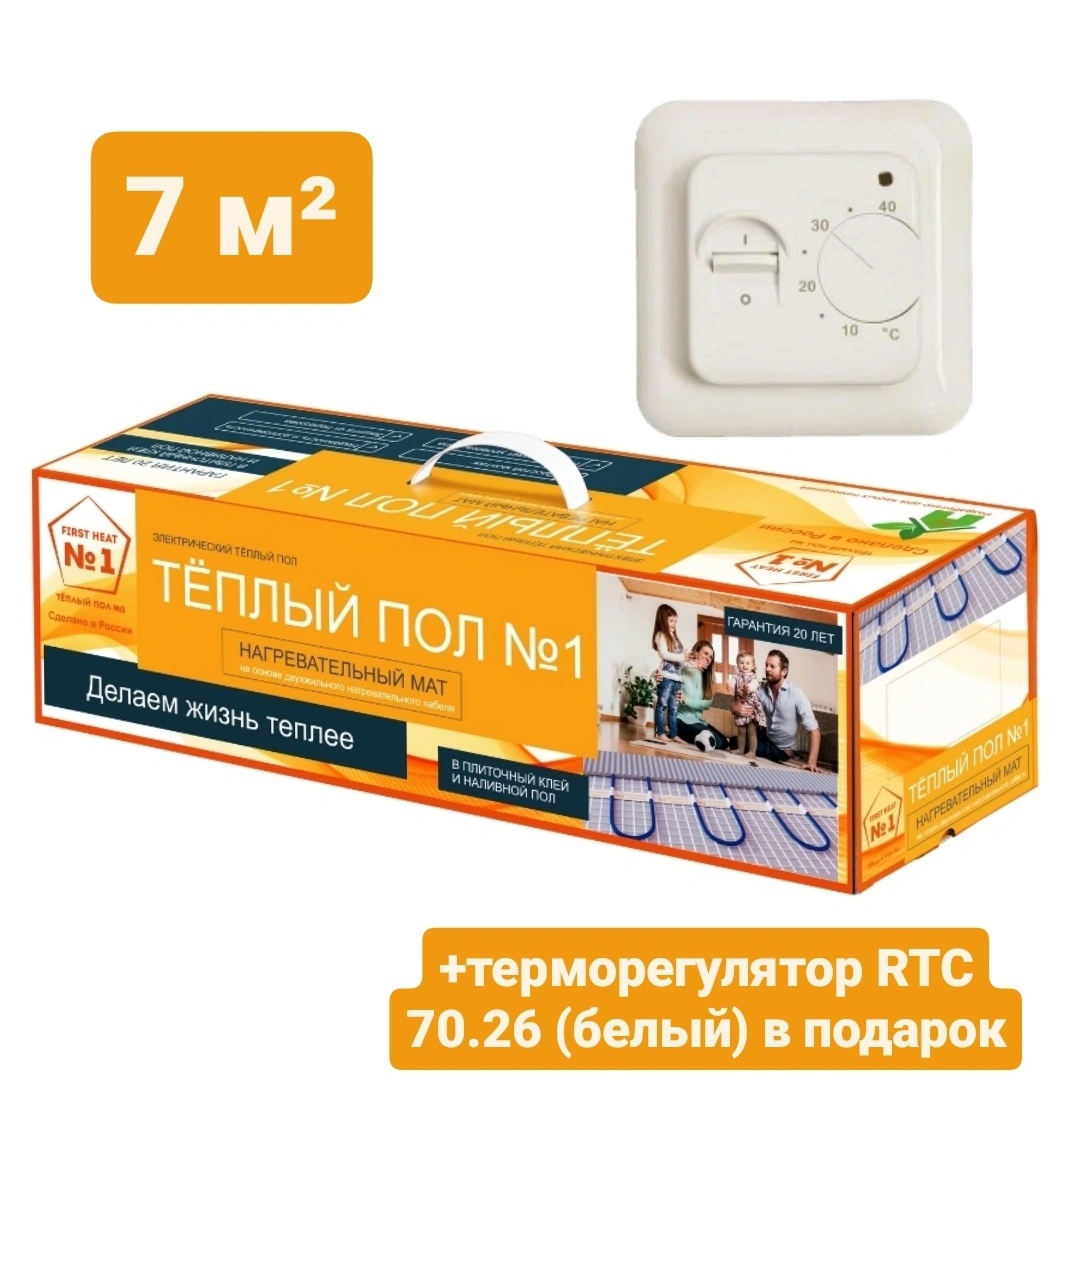 Нагревательный мат Теплый пол №1 ТСП-1050-7,0 с терморегулятором RTC 70.26 (белый)